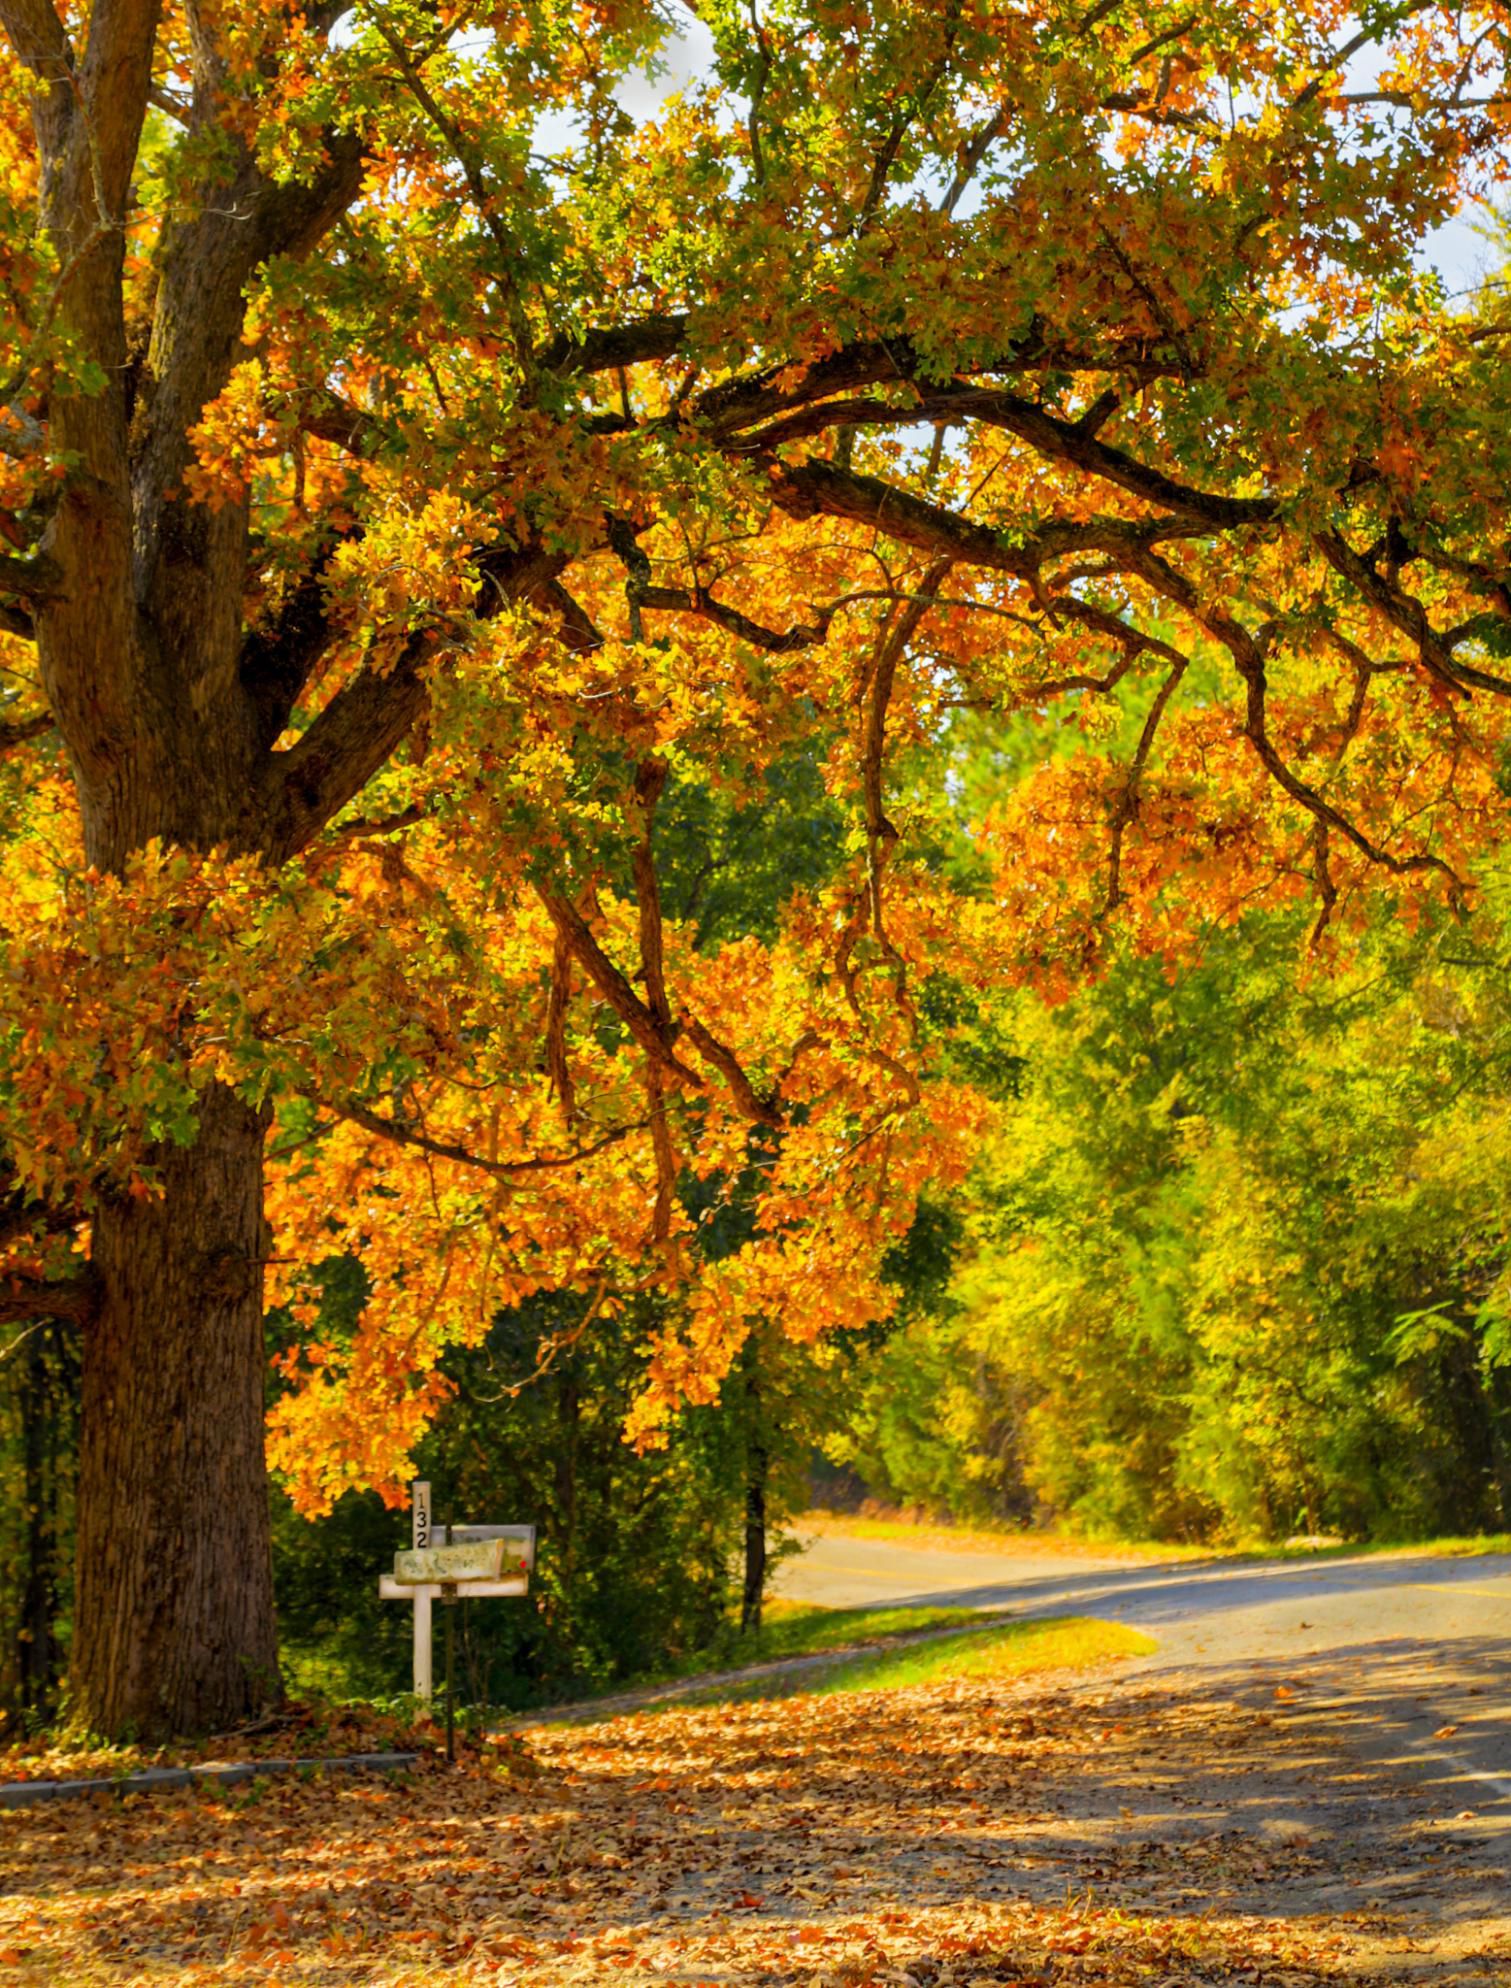 Buzón en una carretera rural de Carolina del Sur en otoño, las hojas del roble están iluminadas por el brillante sol de la mañana.